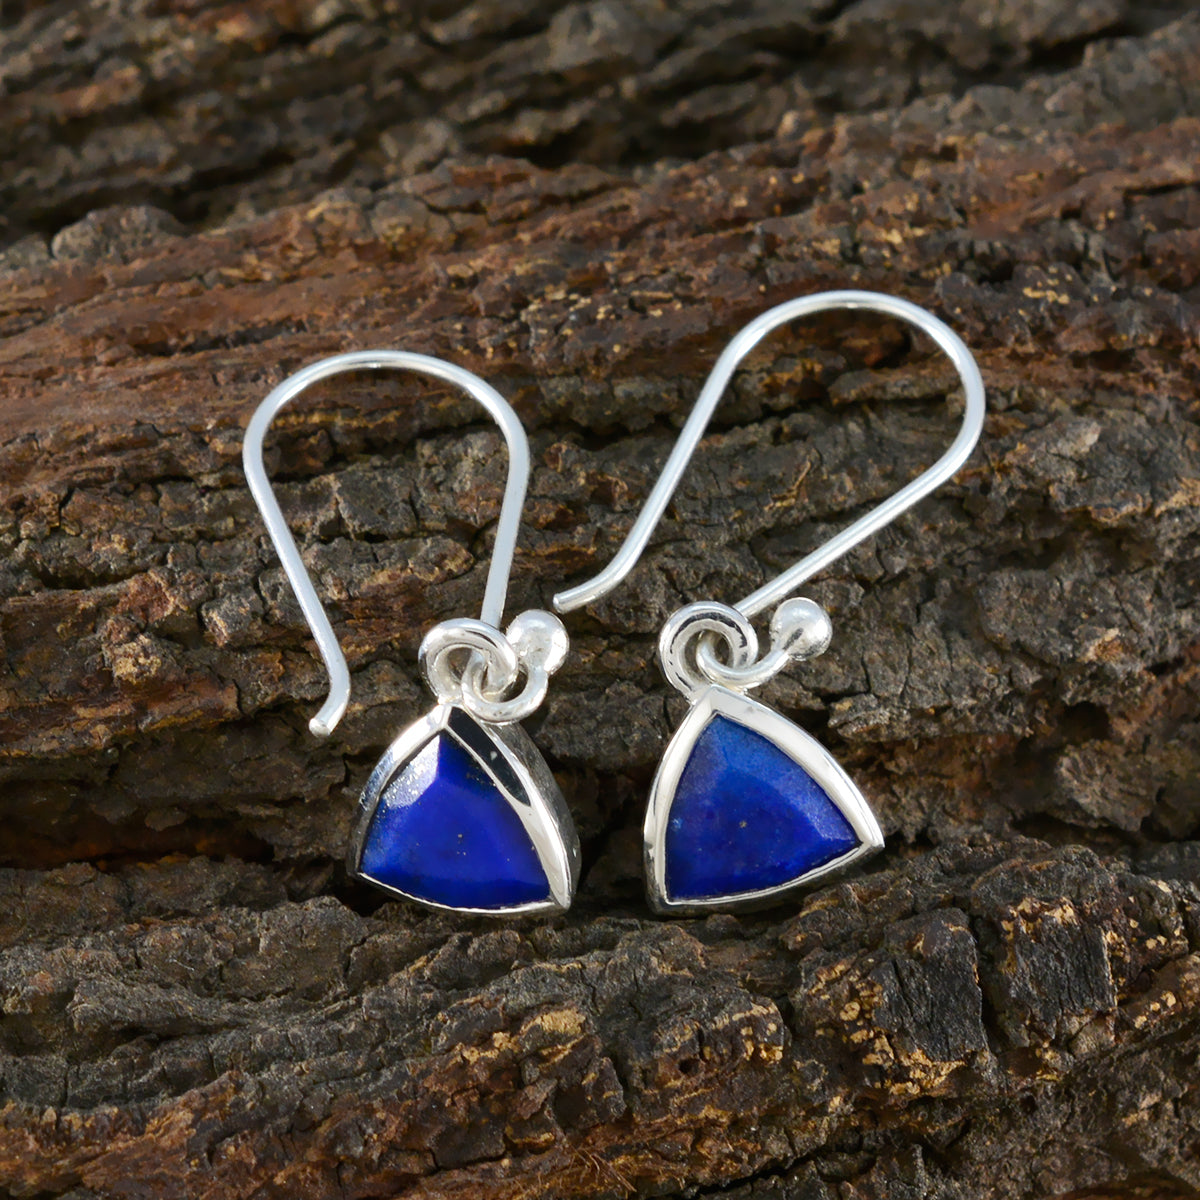 Riyo engageant 925 boucle d'oreille en argent sterling pour femme lapis lazuli boucle d'oreille réglage de la lunette boucle d'oreille bleue boucle d'oreille pendante